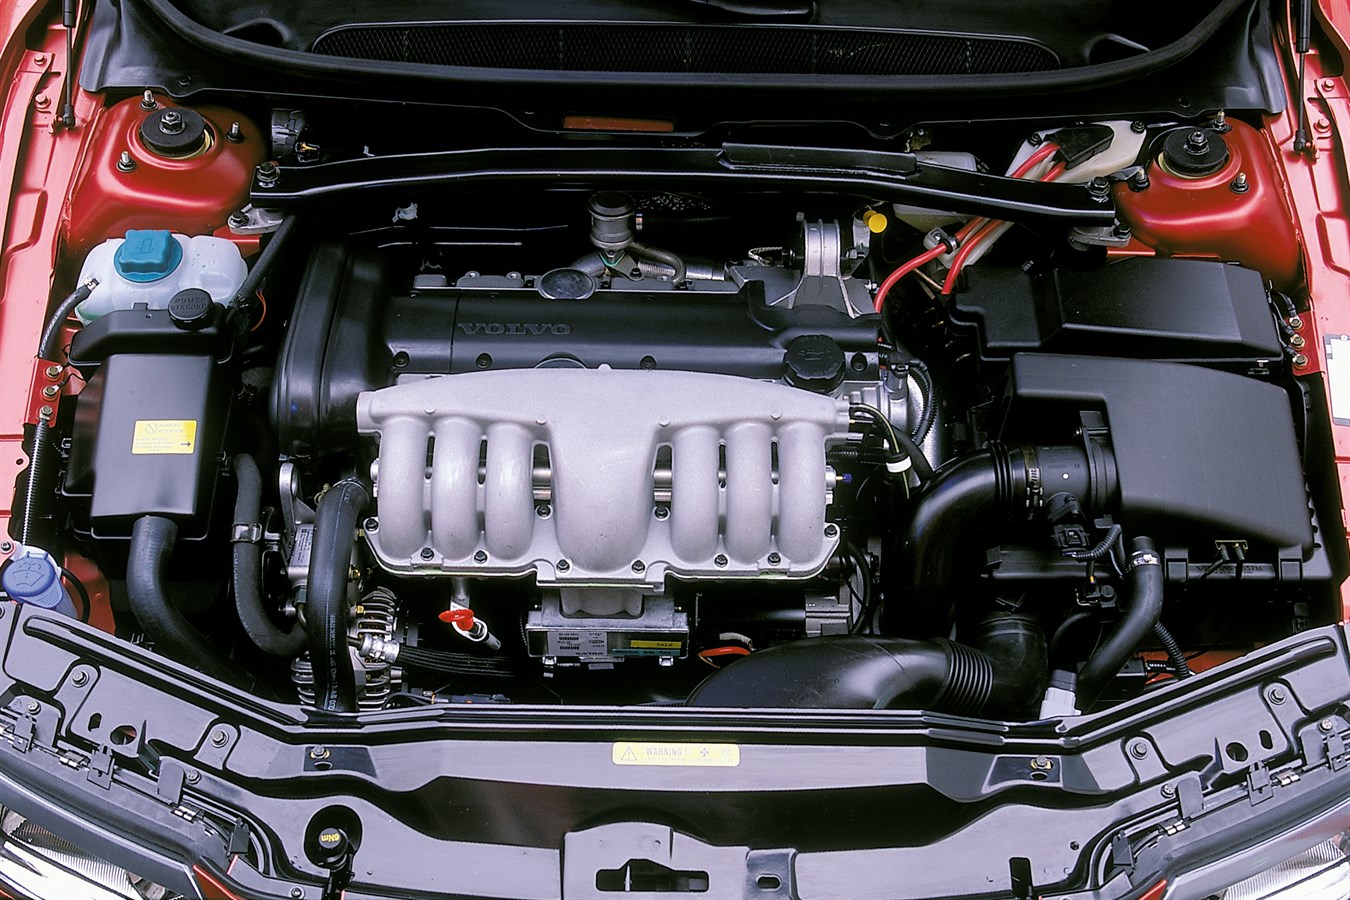 S80 2.9. Двигатель Volvo b6294s2. Двигатель Вольво s80 2.9. Volvo двигатель Volvo s80. Volvo s80 двигатель 2.9.